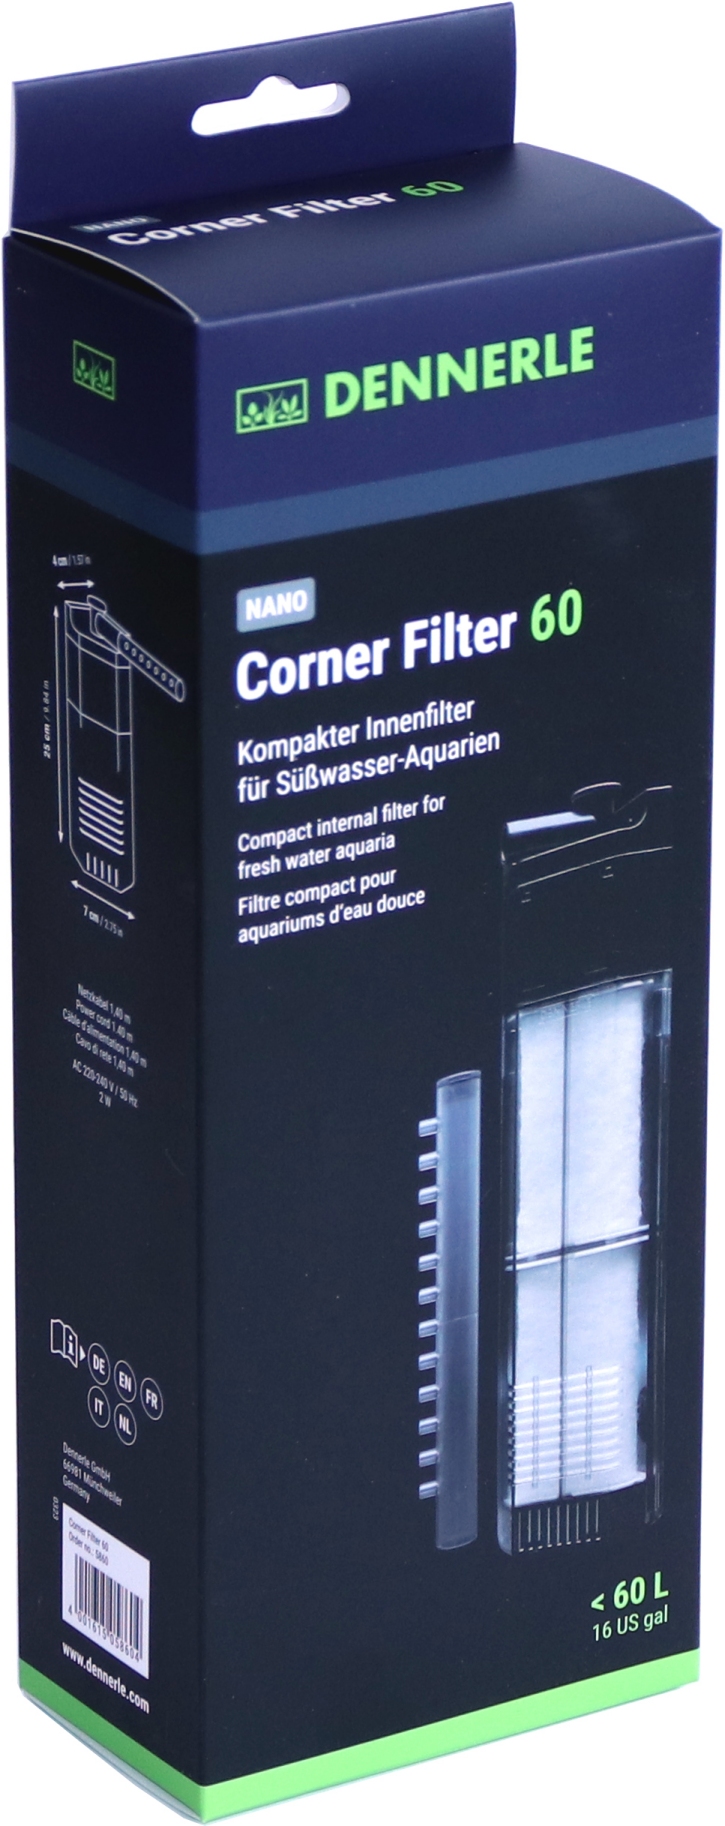 Registration Sale Yes DENNERLE Nano Corner Filter XL